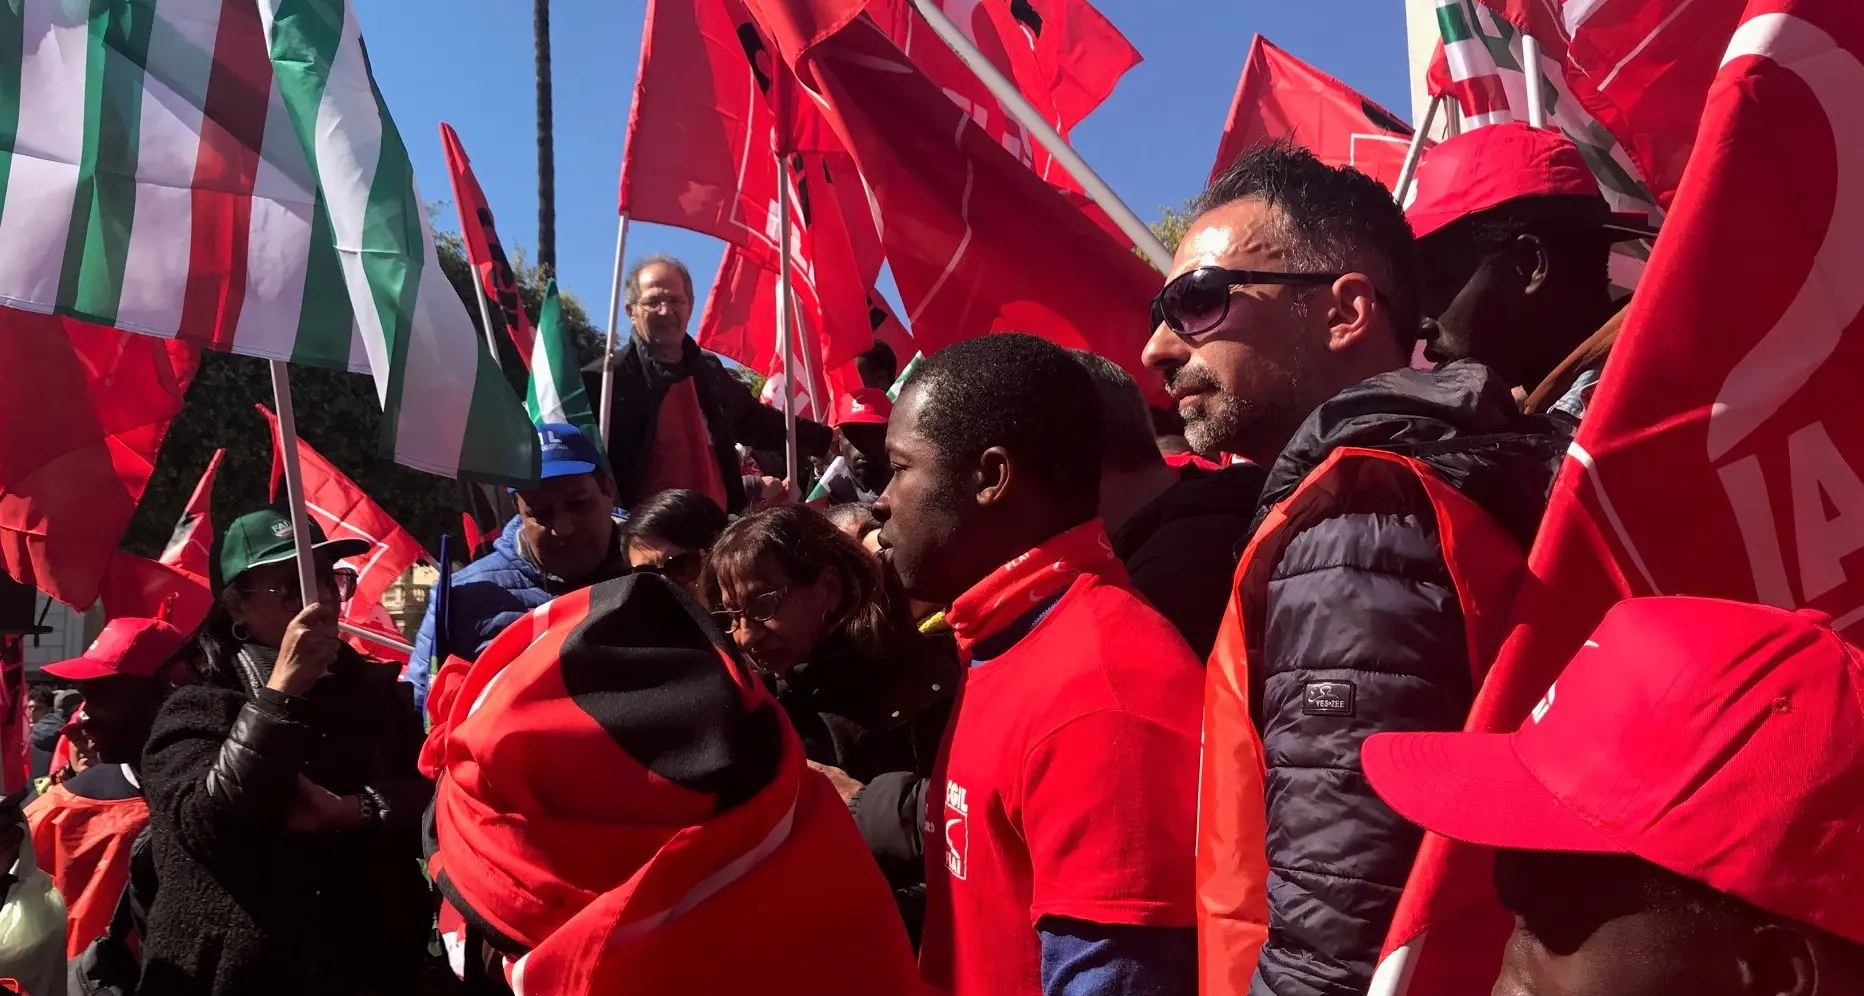 Migranti, accordo di collaborazione tra Fp Palermo e sindacato spagnolo